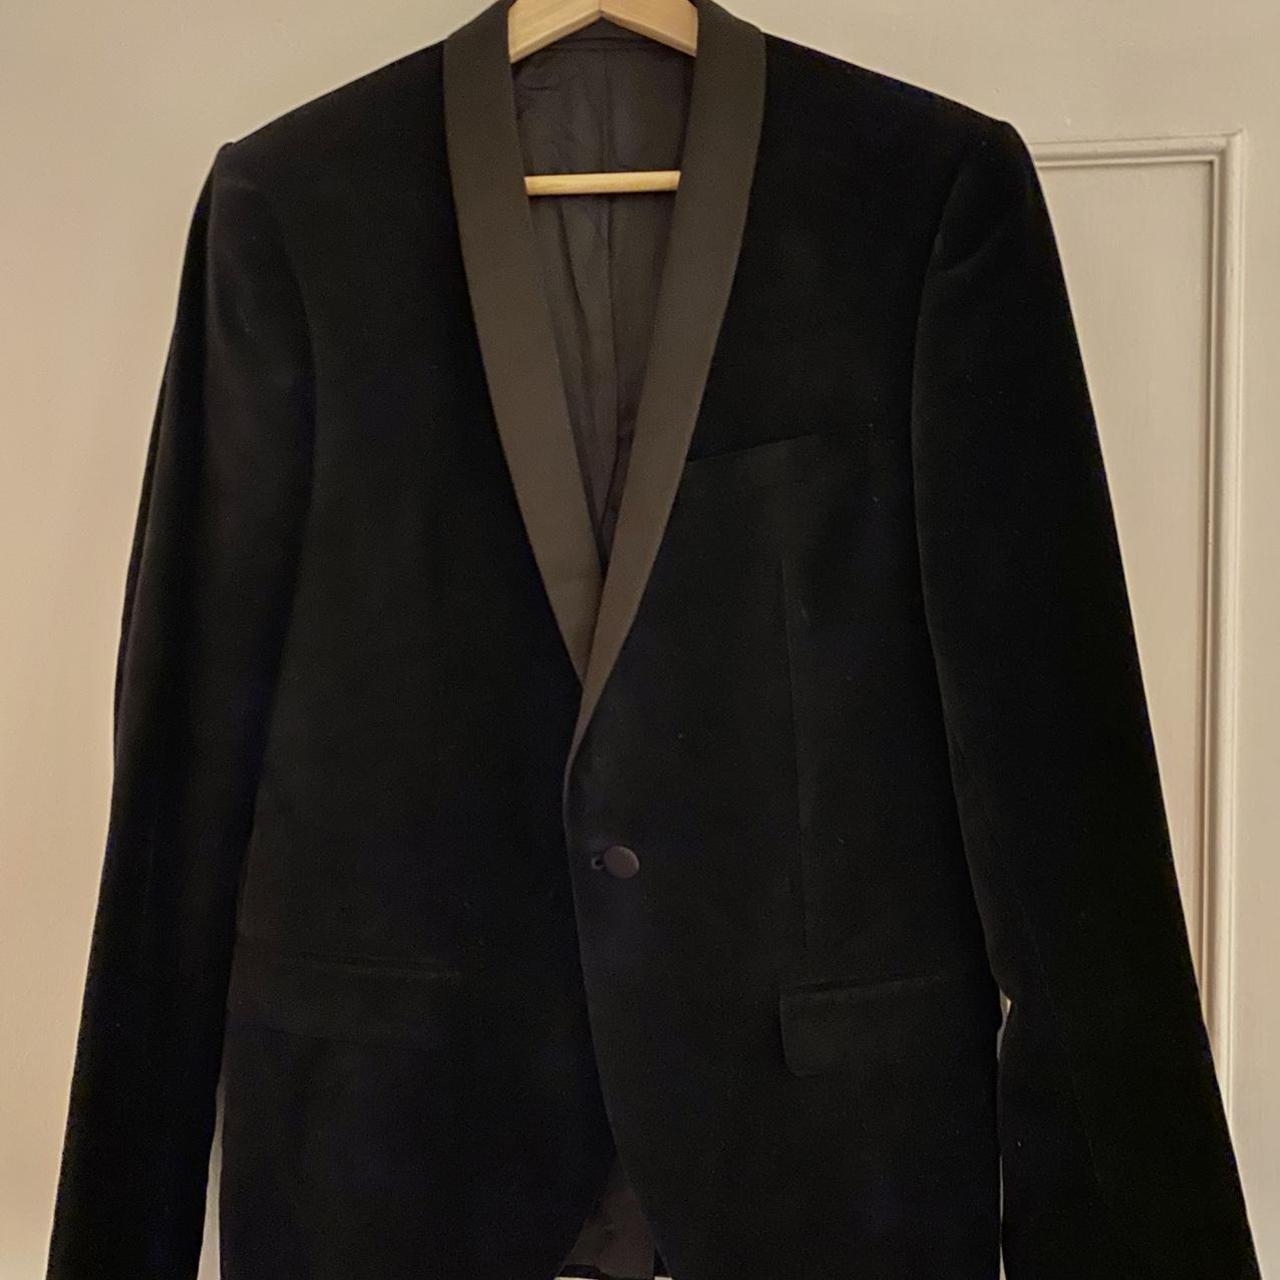 Velvet black tie jacket / blazer. Great... - Depop